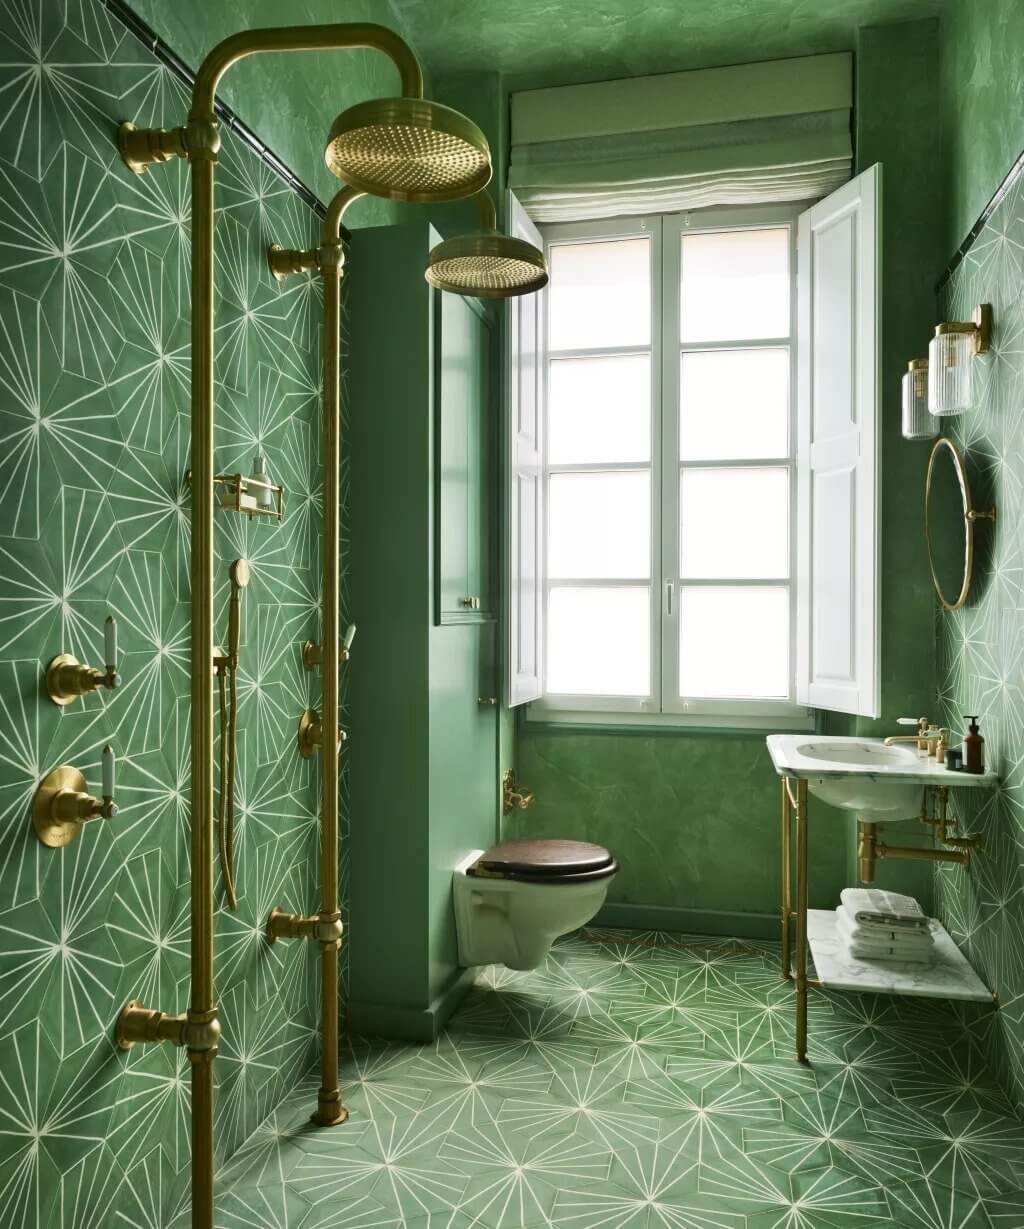 Bathroom Design Trends 2022